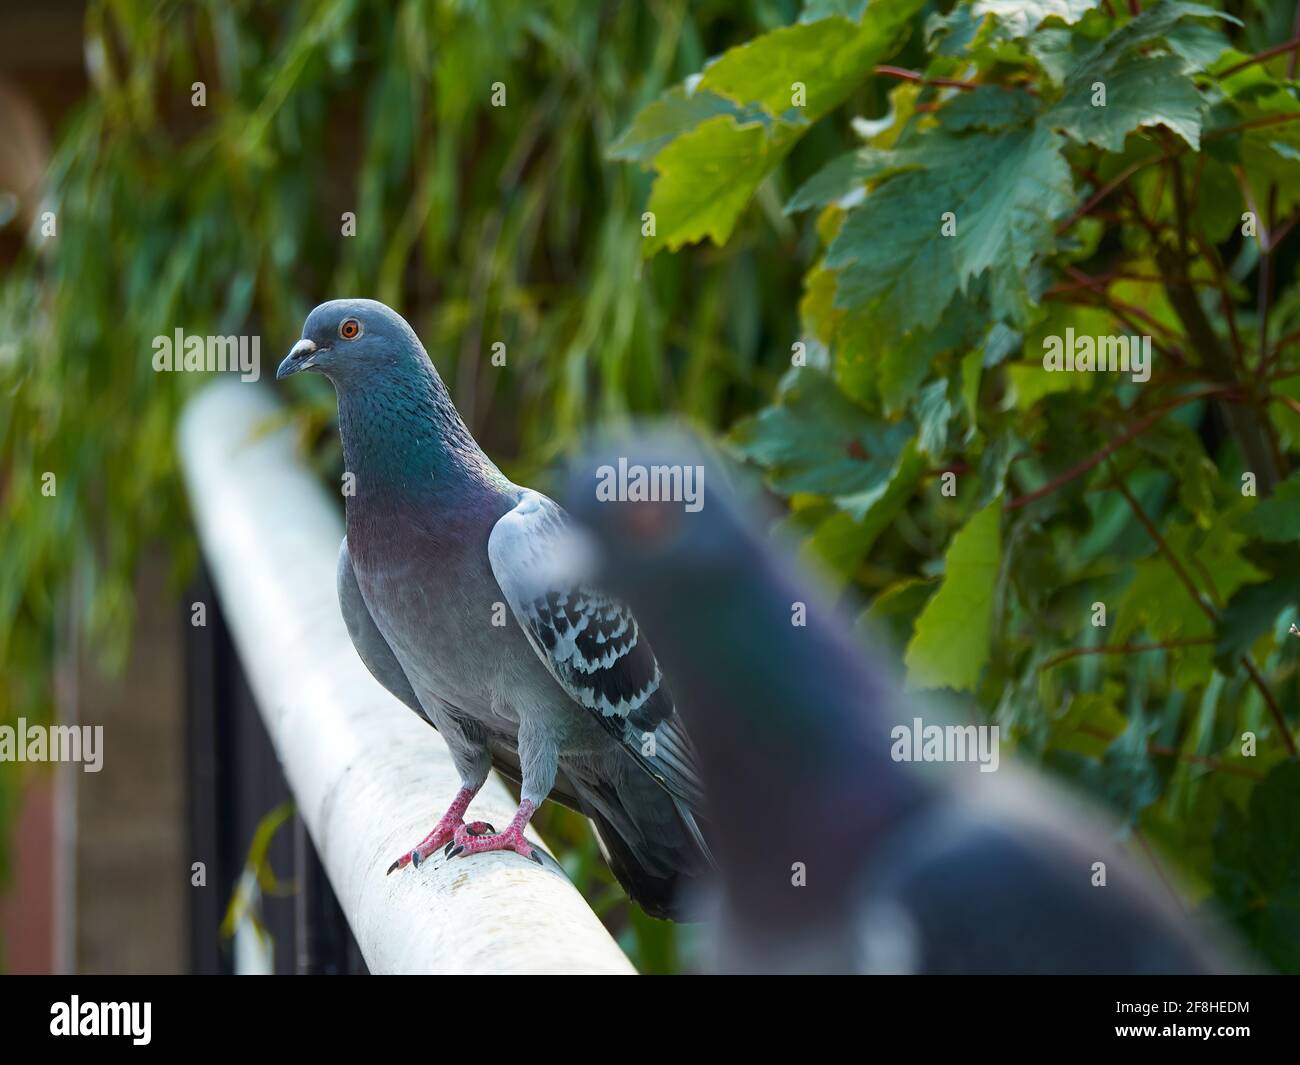 Un par de palomas salvajes impopulares de Londres, atrapadas en una luz más halagadora, con la luz del sol sacando la elegante iridiscencia de su plumaje. Foto de stock